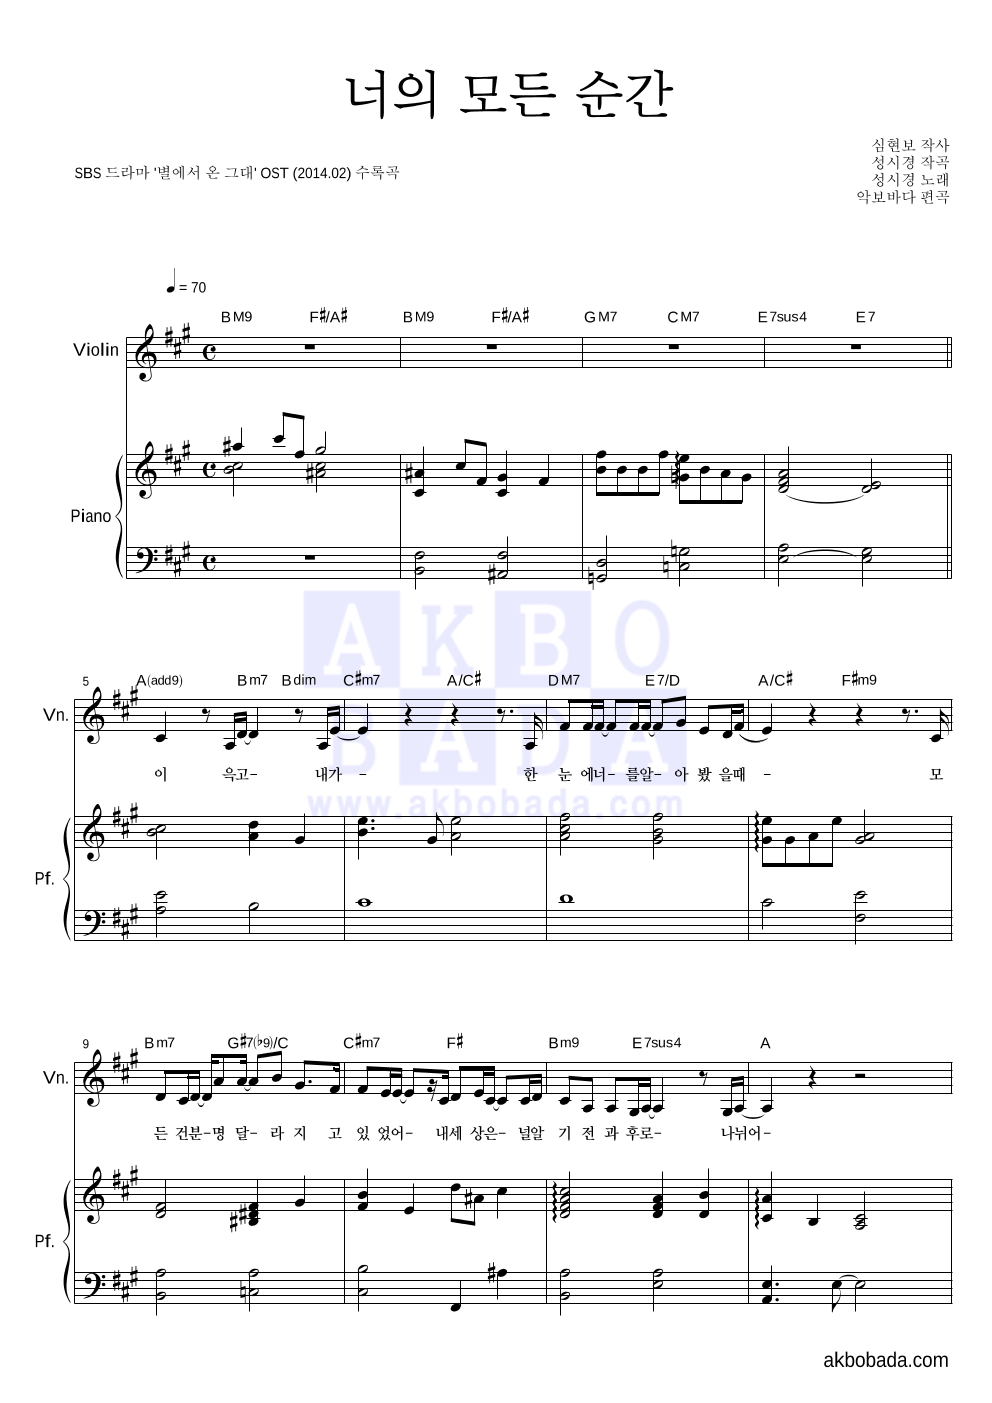 성시경 - 너의 모든 순간 (Piano Ver.) 바이올린&피아노 악보 